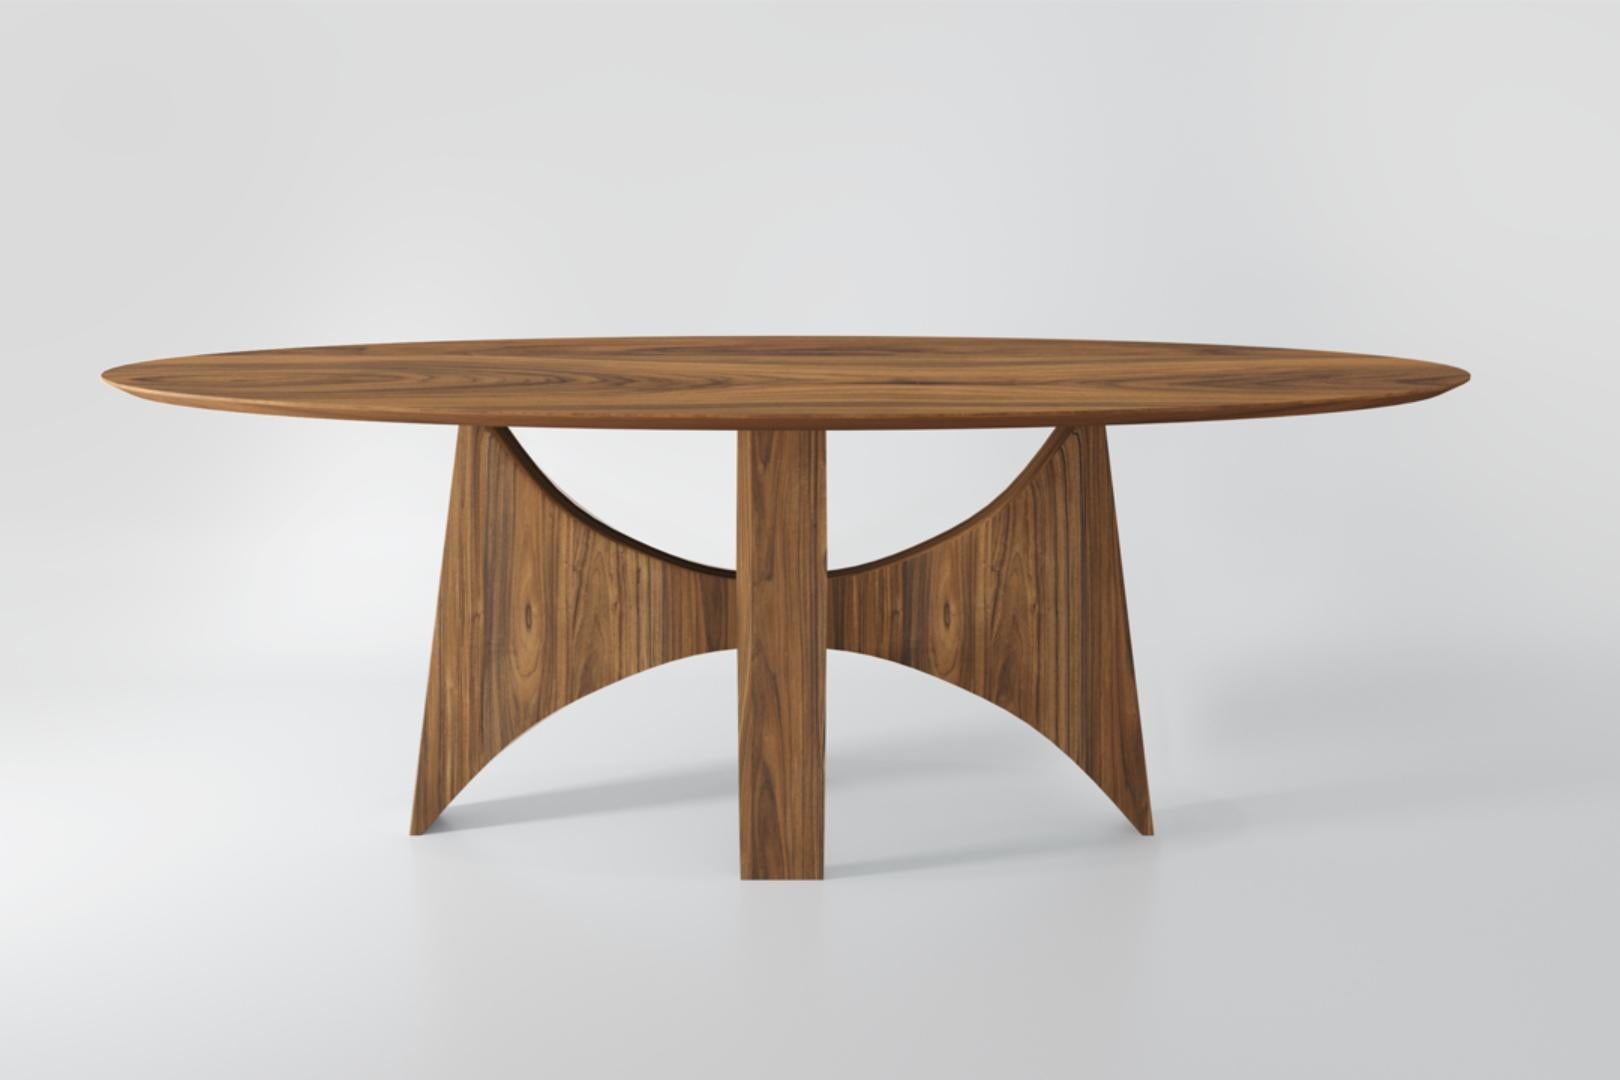 Der Planalto Oval Dining Table wurde von den Kurven der Werke des Meisters Oscar Niemeyer inspiriert. Die Gestaltung erinnert an die Bauten des Architekten in Brasília, Brasilien, wo die skulpturale Eleganz seines Entwurfs besonders hervorsticht. Er